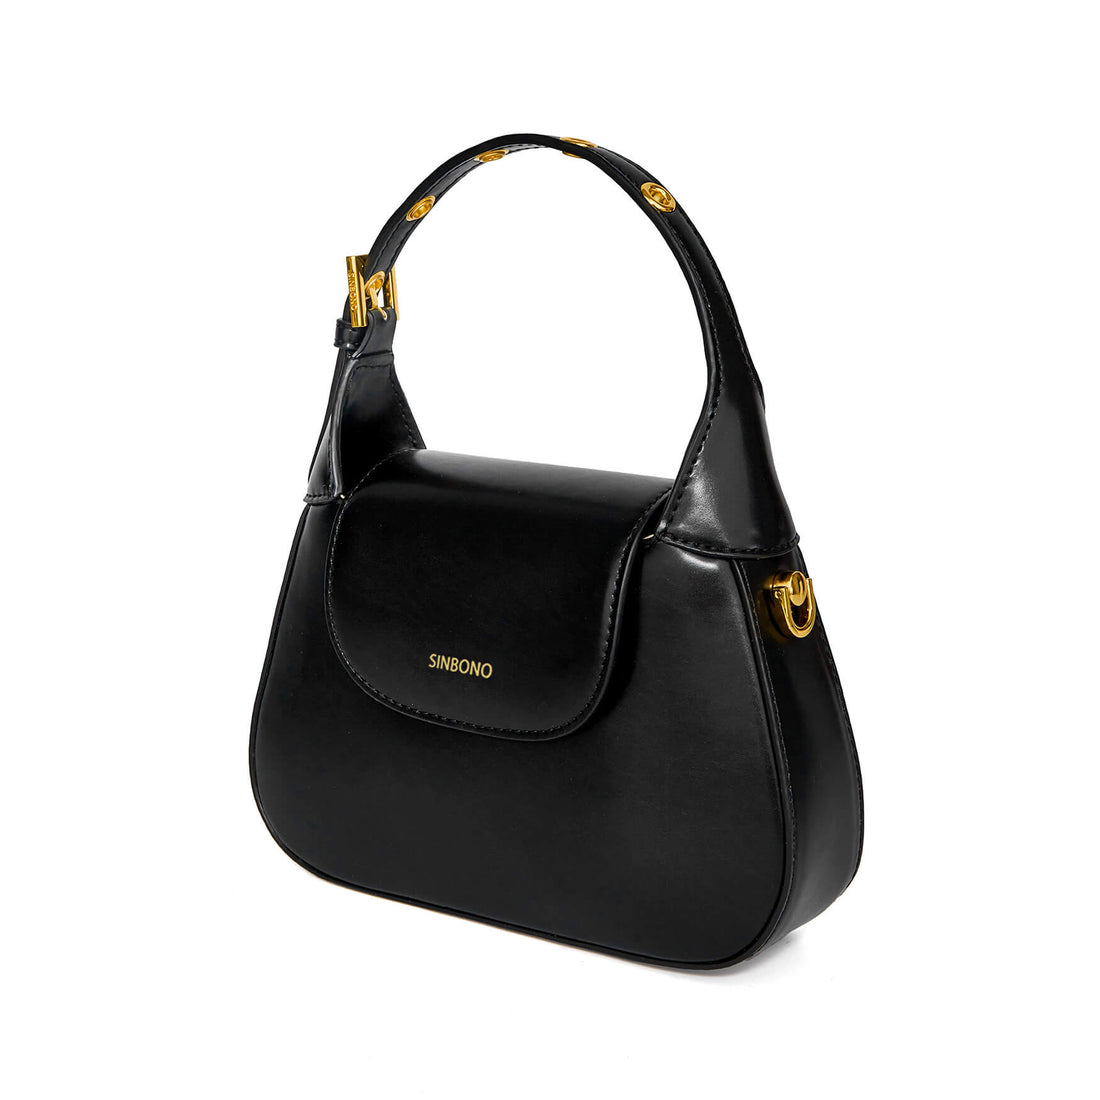 SINBONO Women's Alice Top Handle Bag